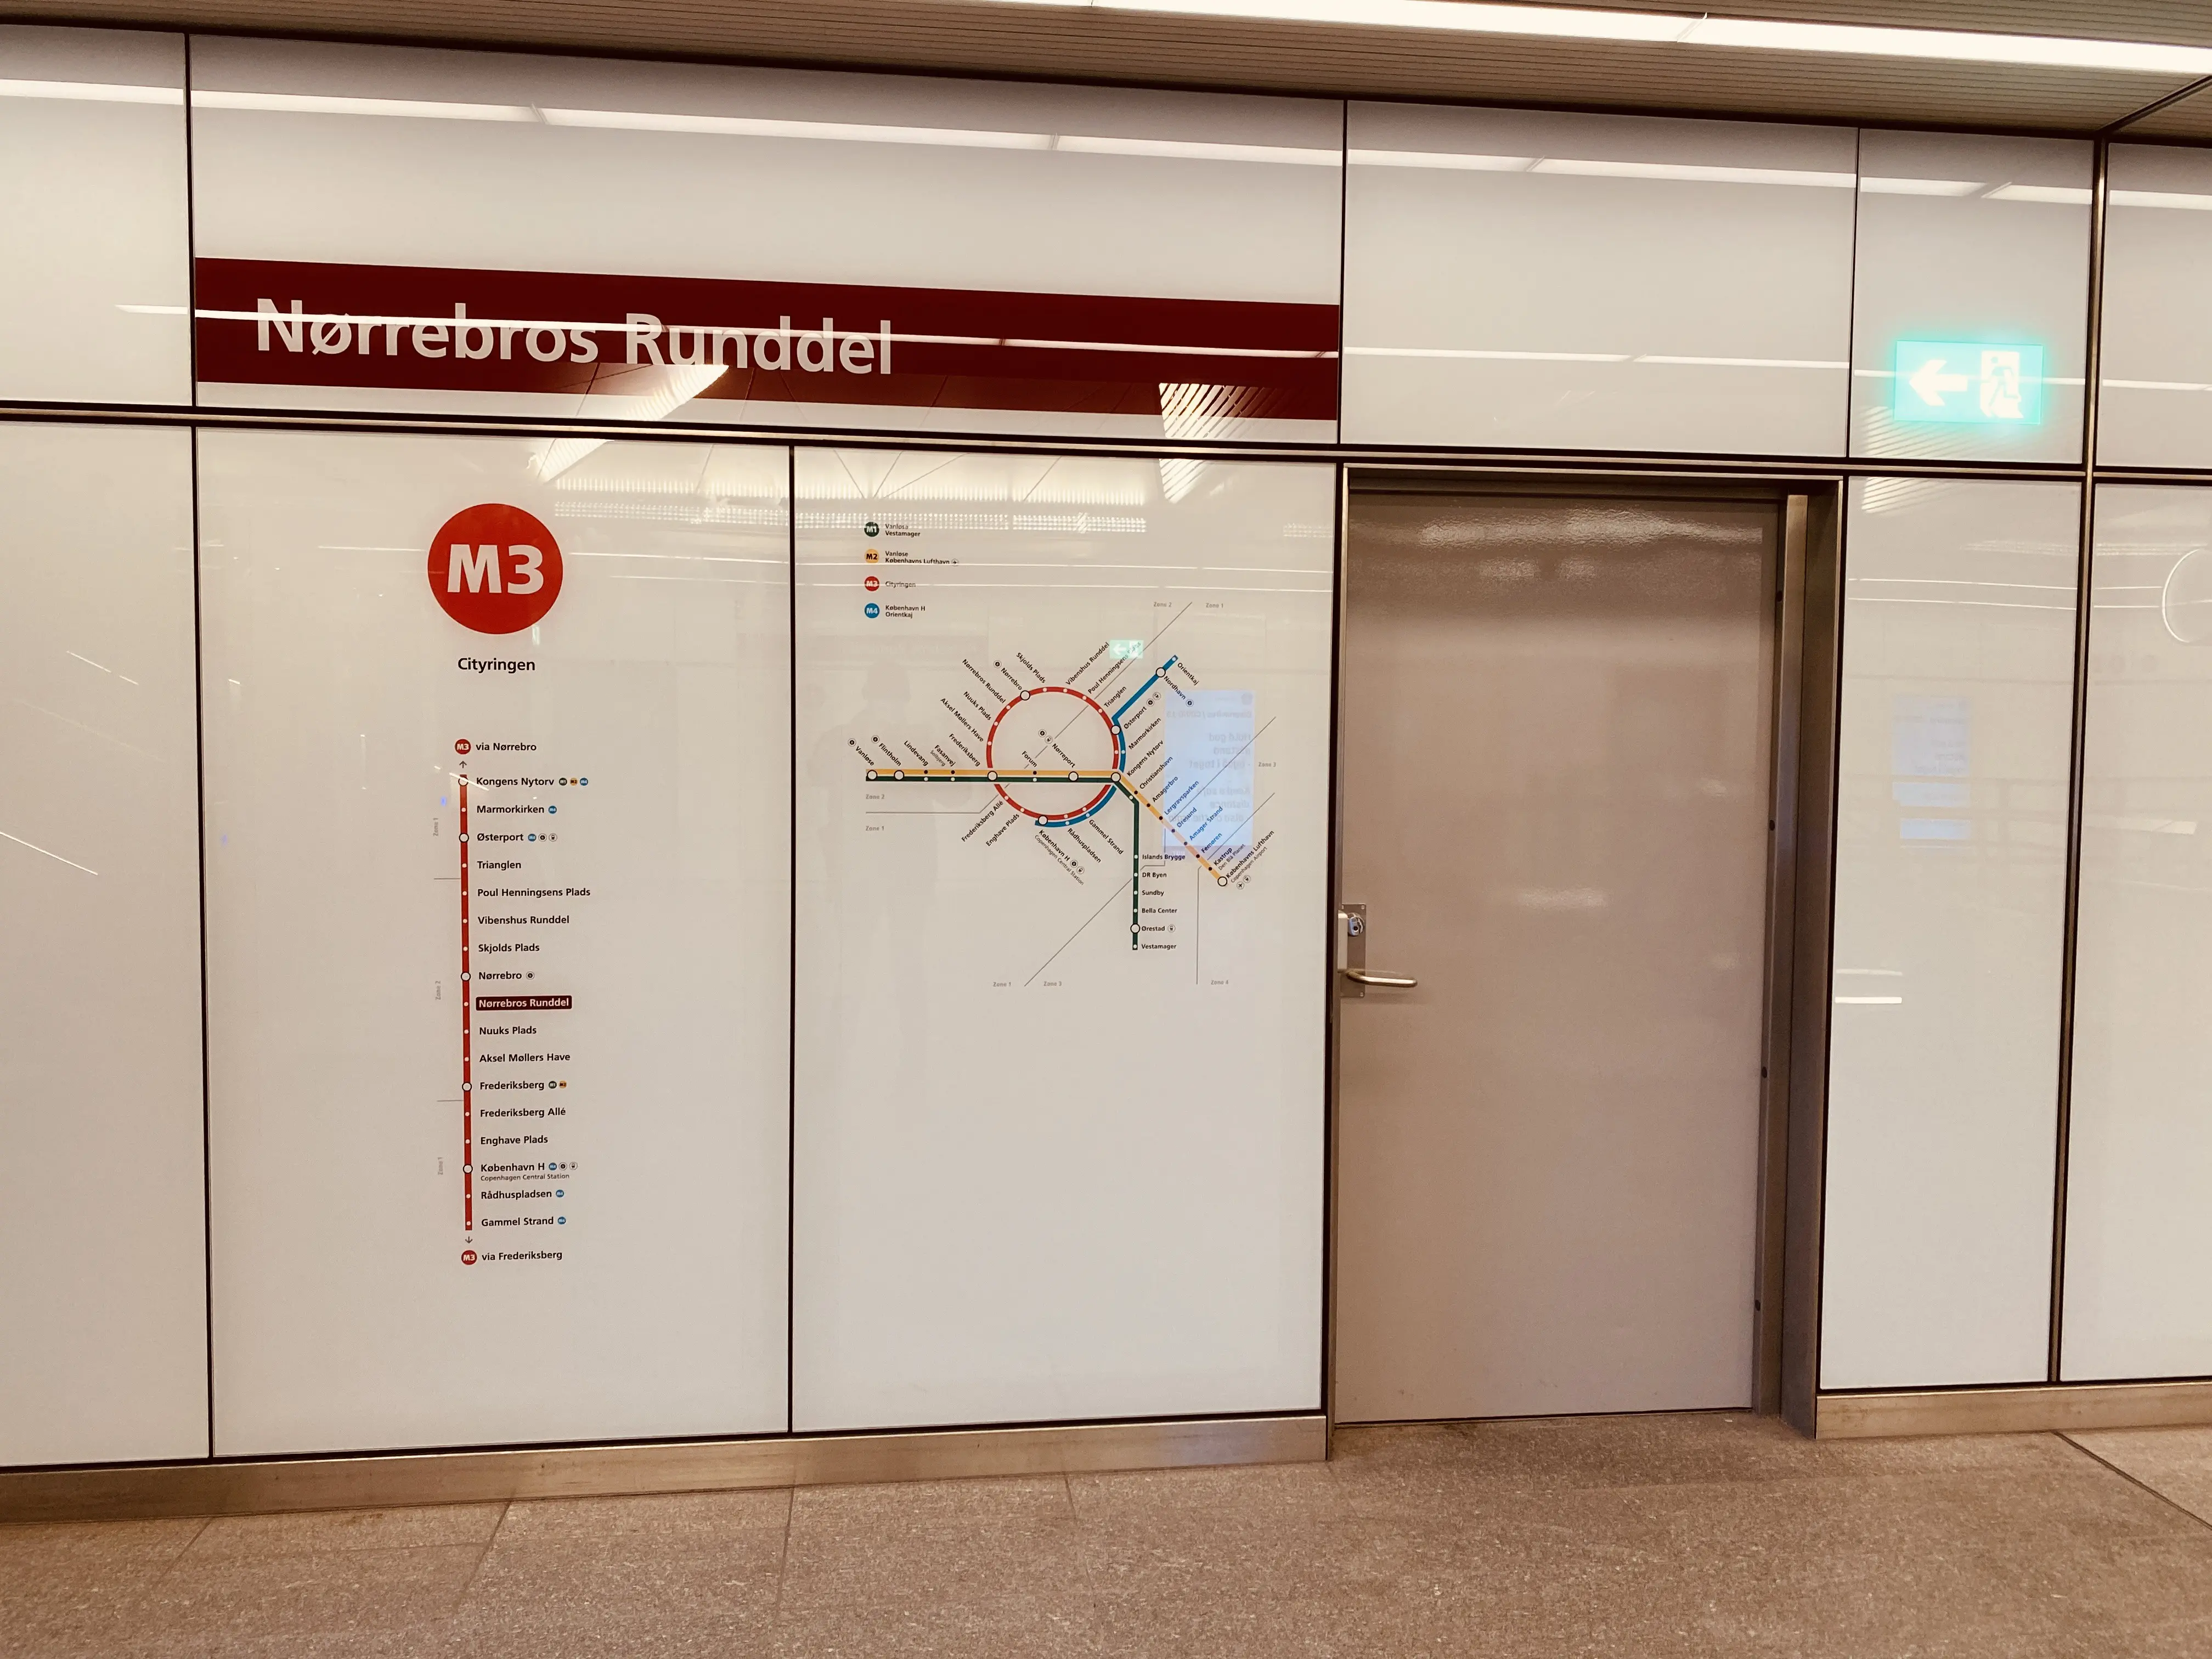 Billede af Nørrebros Runddel Metrostation.